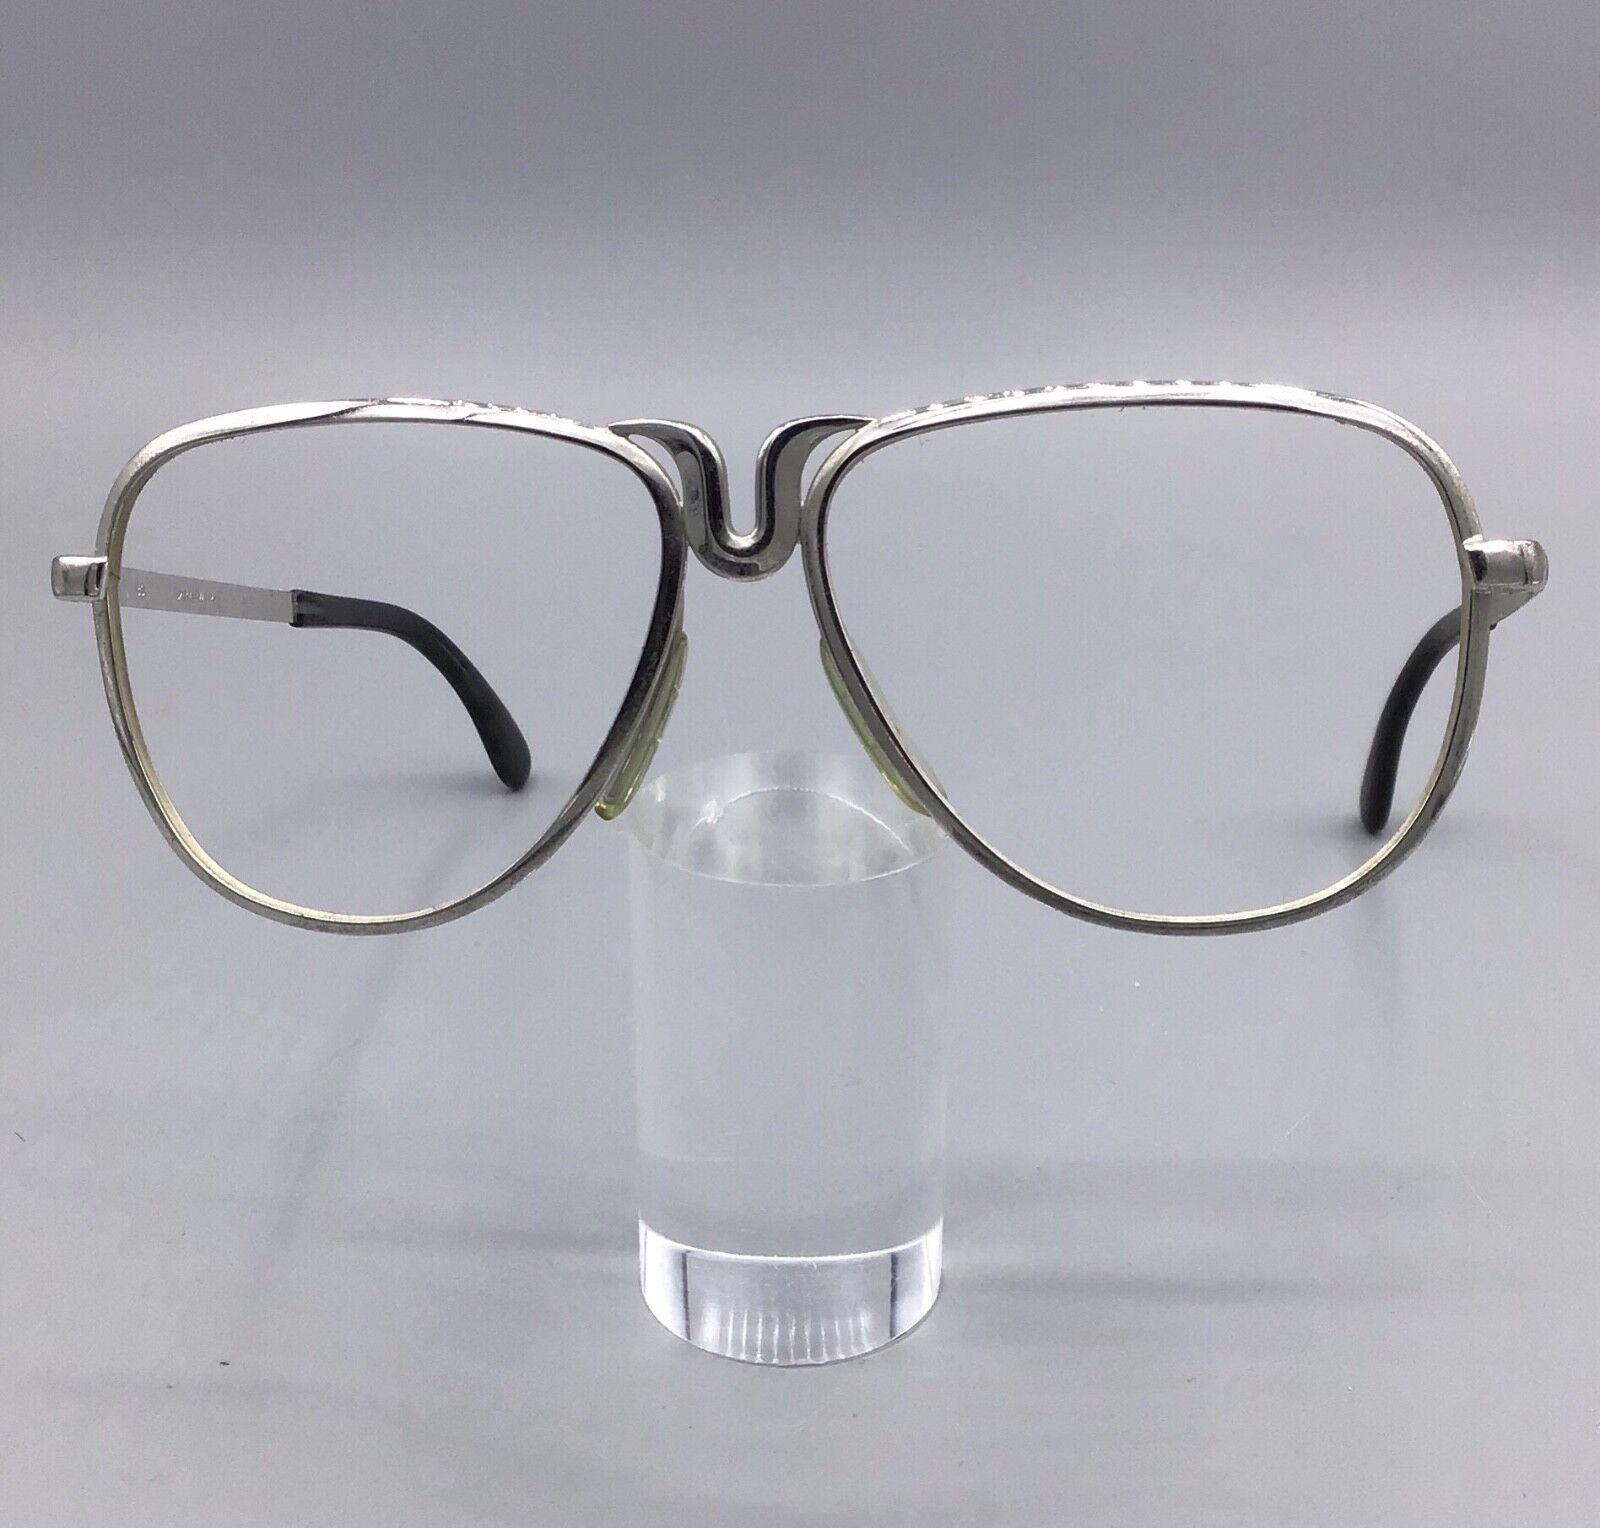 Marwitz occhiale vintage brillen eyewear frame lunettes gafas model 7807 BC7